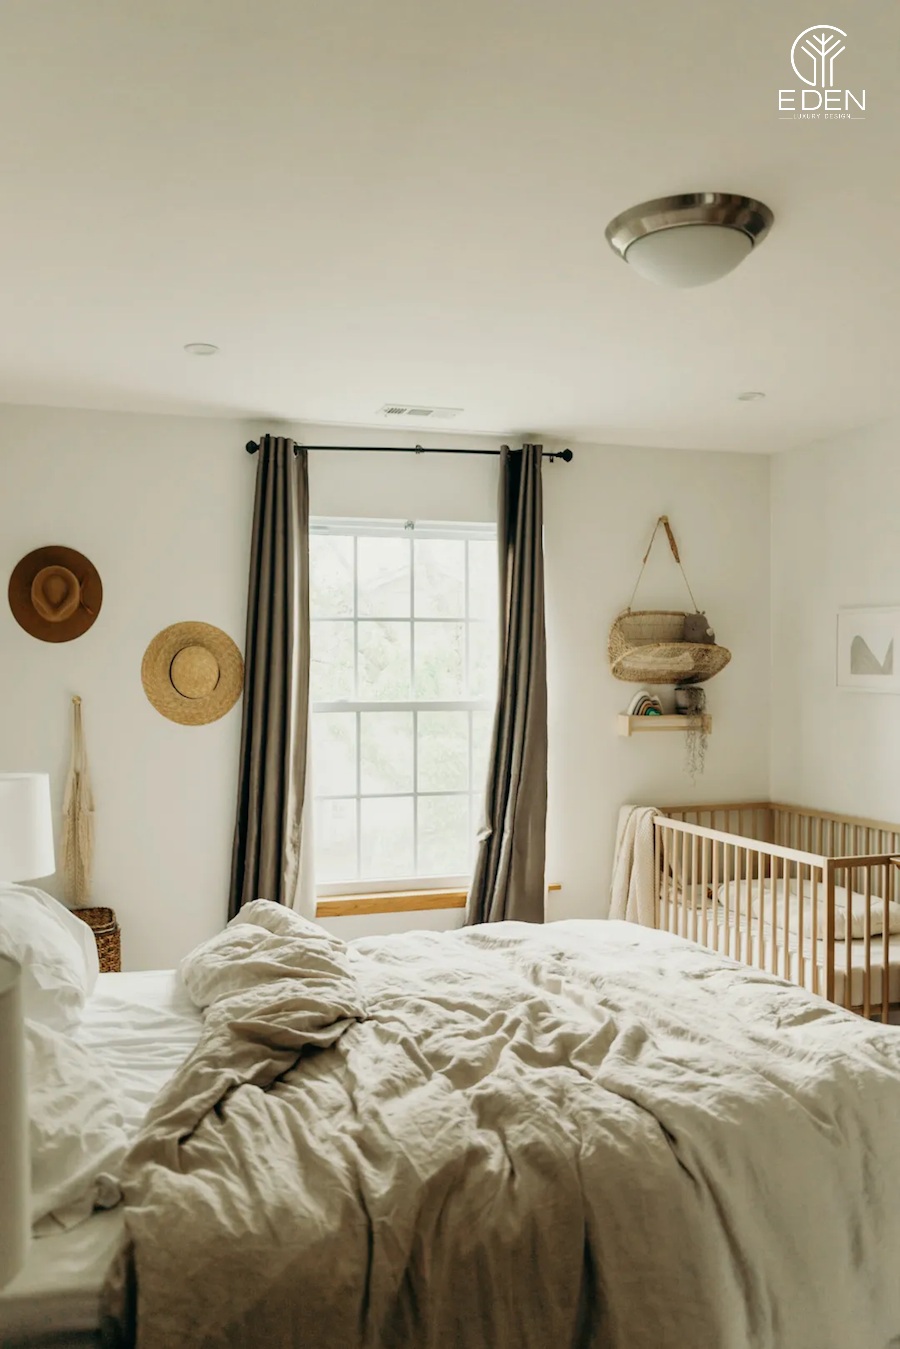 Mẫu 5: Phòng ngủ tone màu gỗ và be cực kỳ ấm áp cùng thiết kế vintage đơn giản nhưng lại đậm chất nghệ thuật